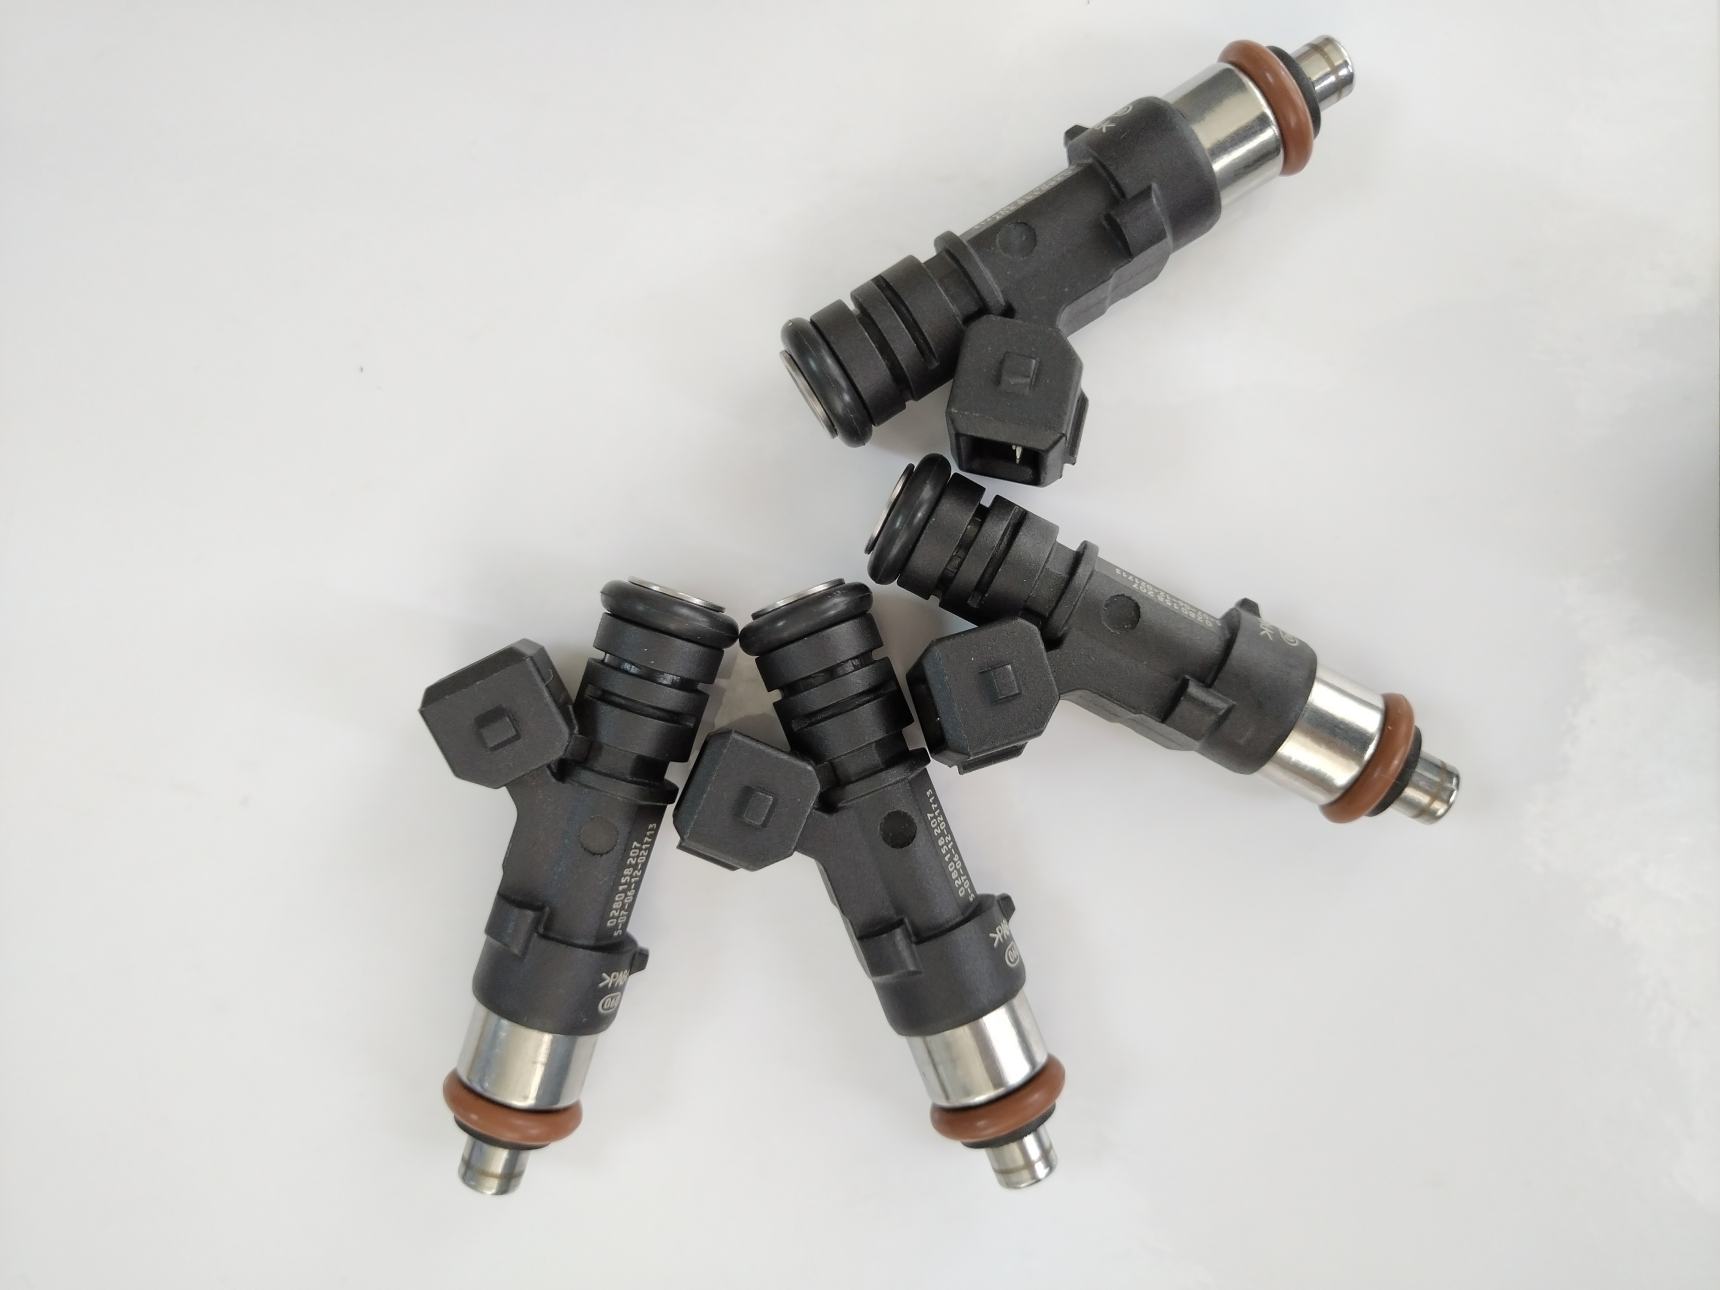 new Fuel Injector 0280158103 For Mazda 3 5 6 MX-5 MX5 Miata 1.8L 2.0L 2.3L Ford L3G513250